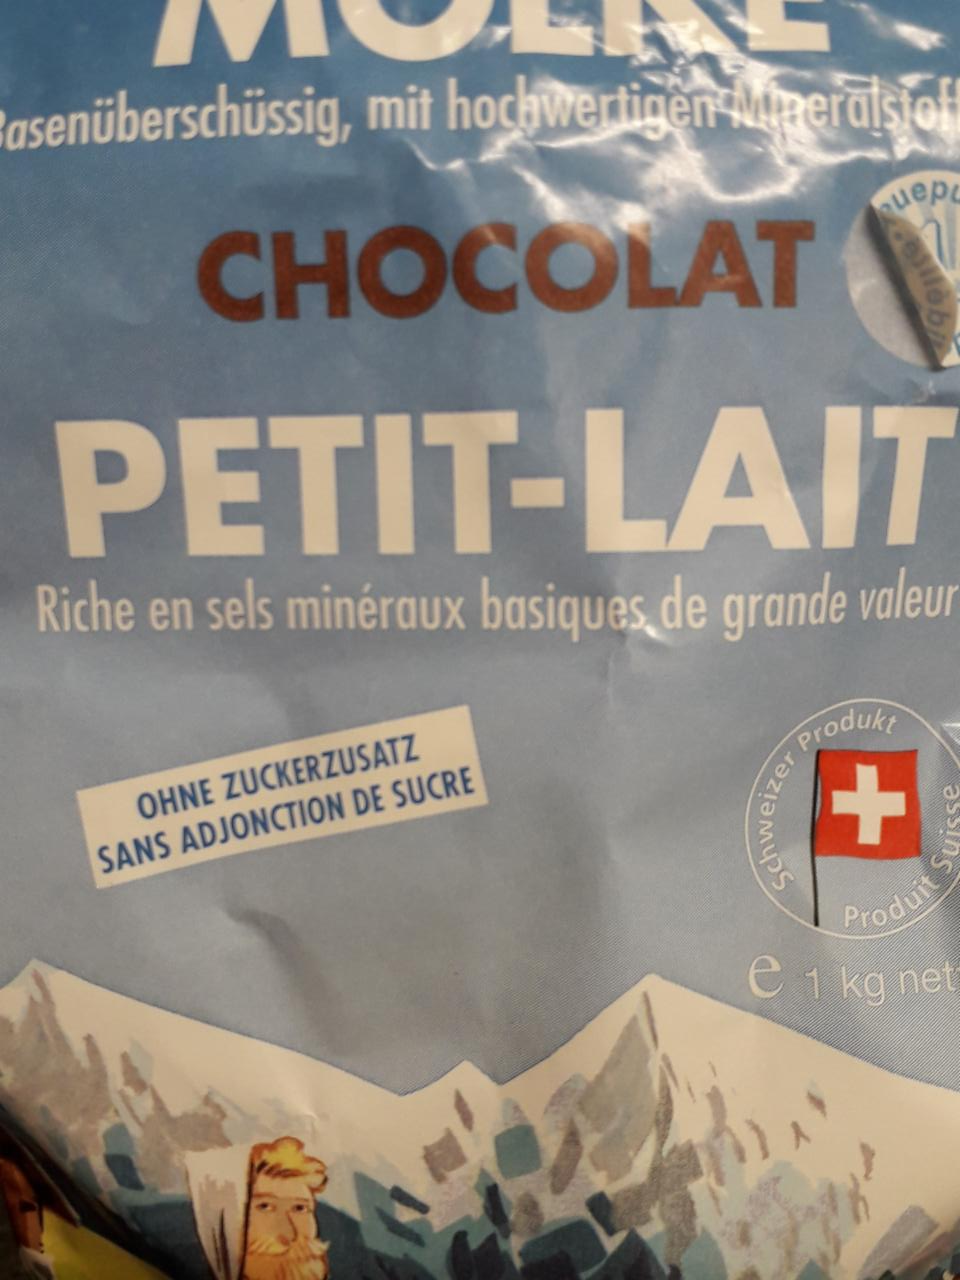 Fotografie - petit lait chocolate